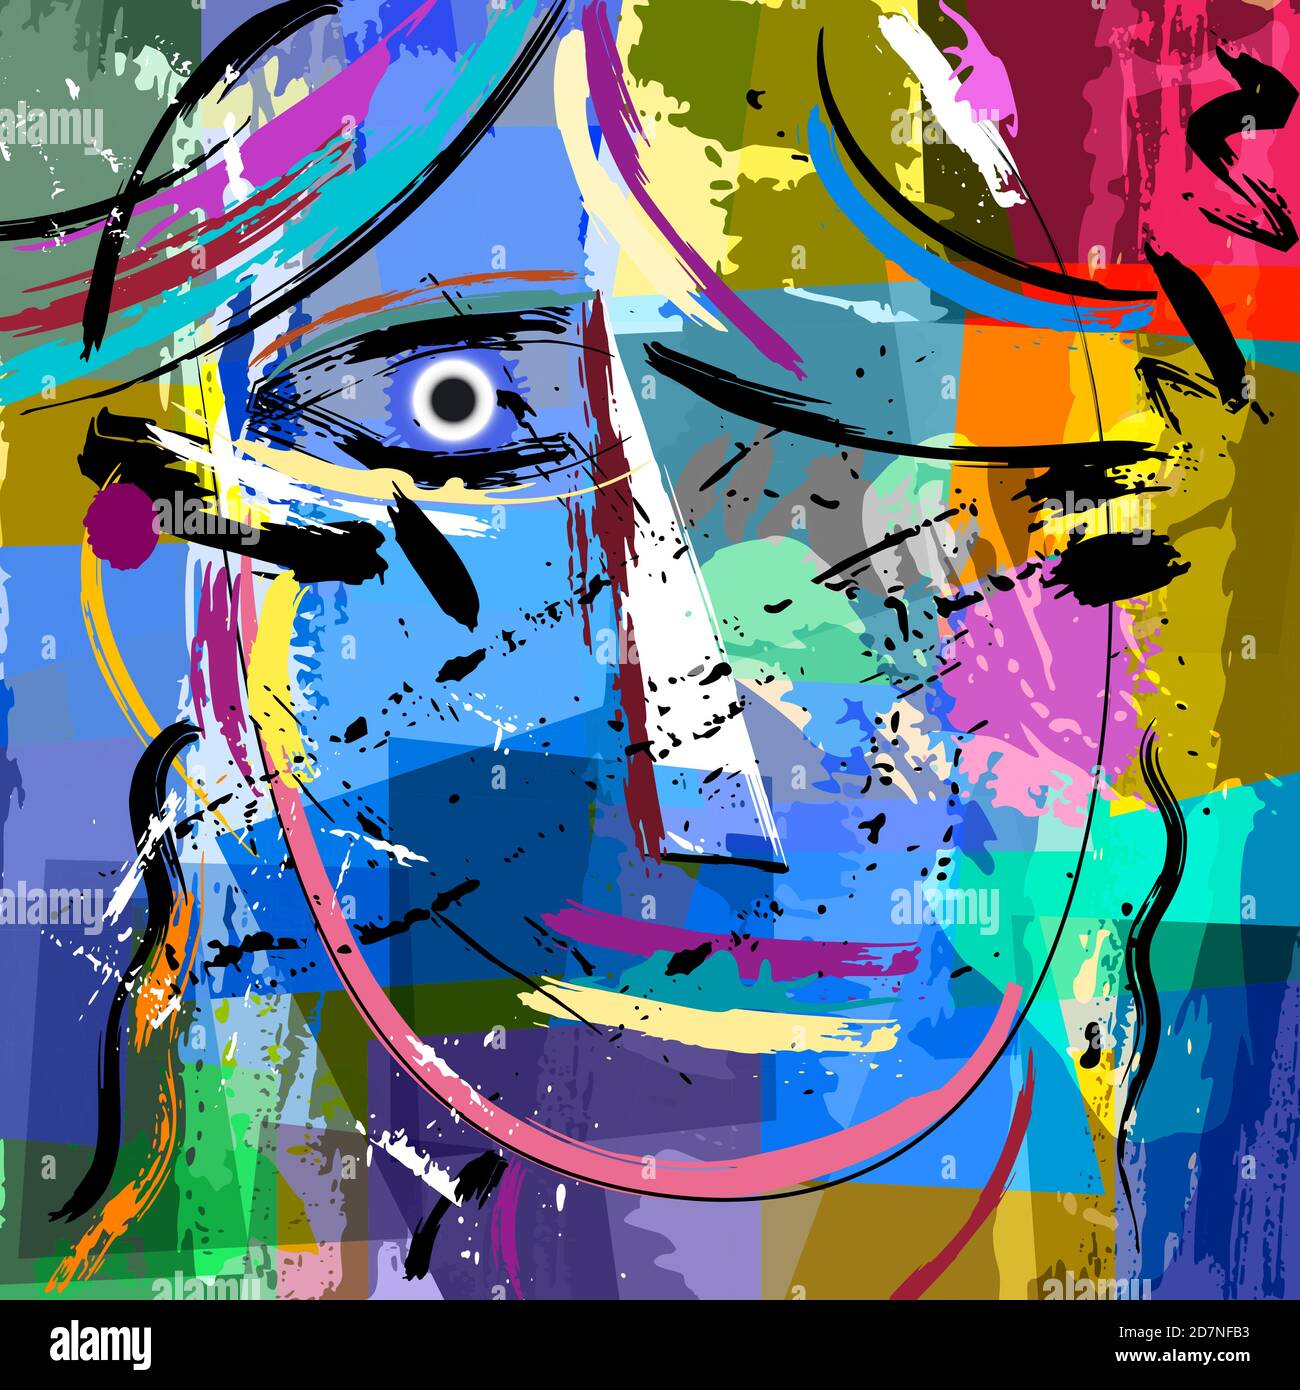 composition abstraite de fond, avec des traits de peinture et des éclaboussures, visage/masque Illustration de Vecteur